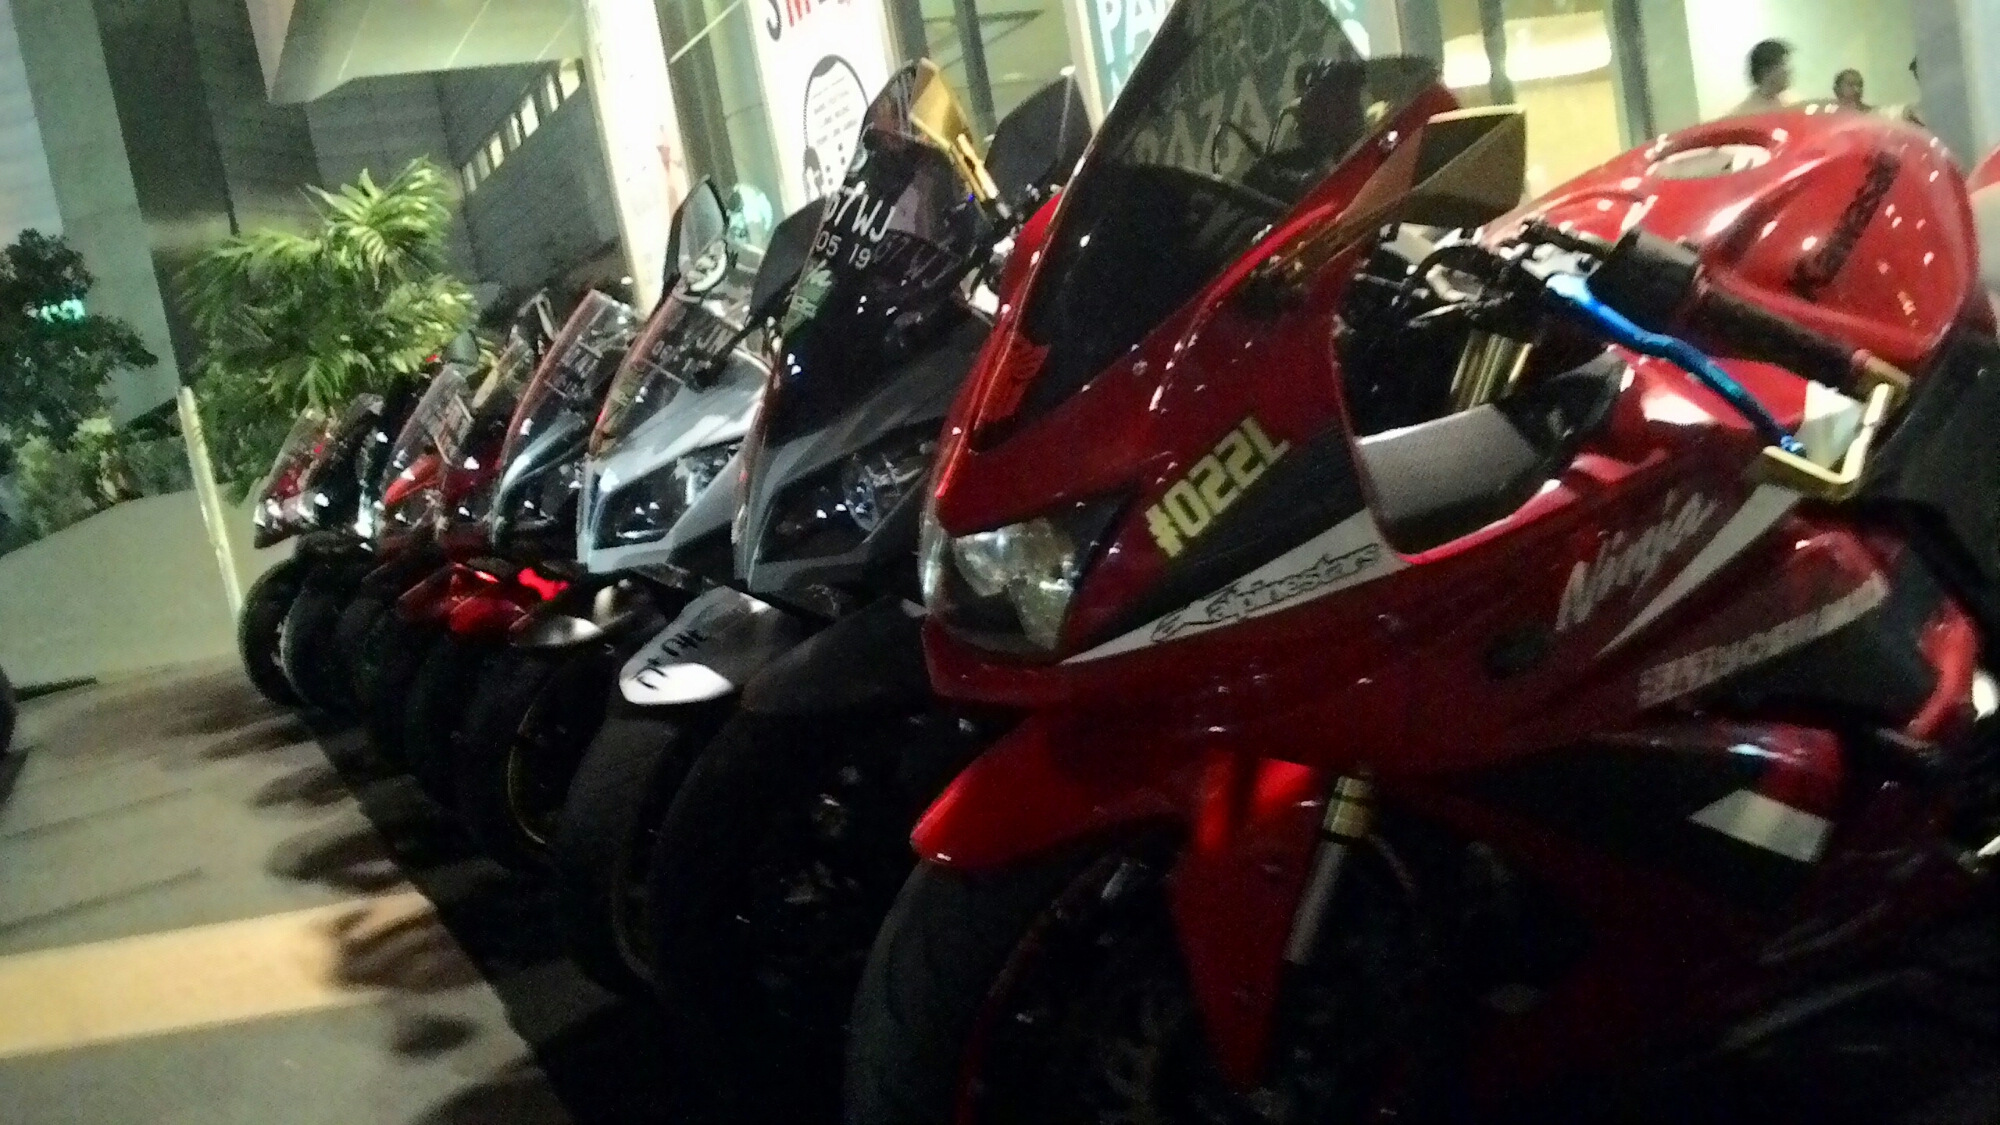 Kumpulan Motor Kawasaki Di Surabaya Motor Show 2015 Ndeso94 Dot